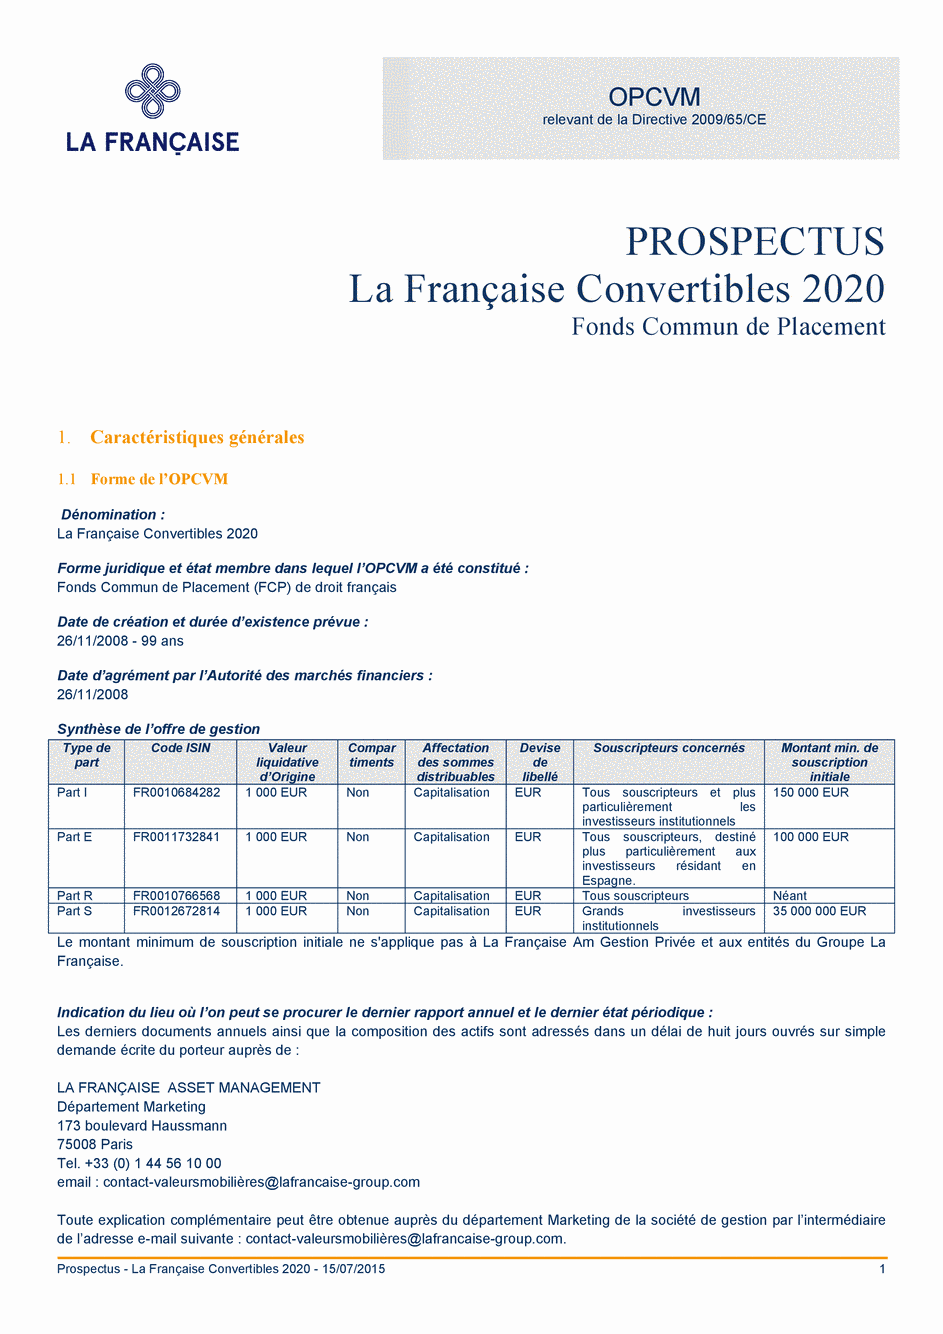 Prospectus La Française Convertibles 2020 - Part I - 15/07/2015 - Français